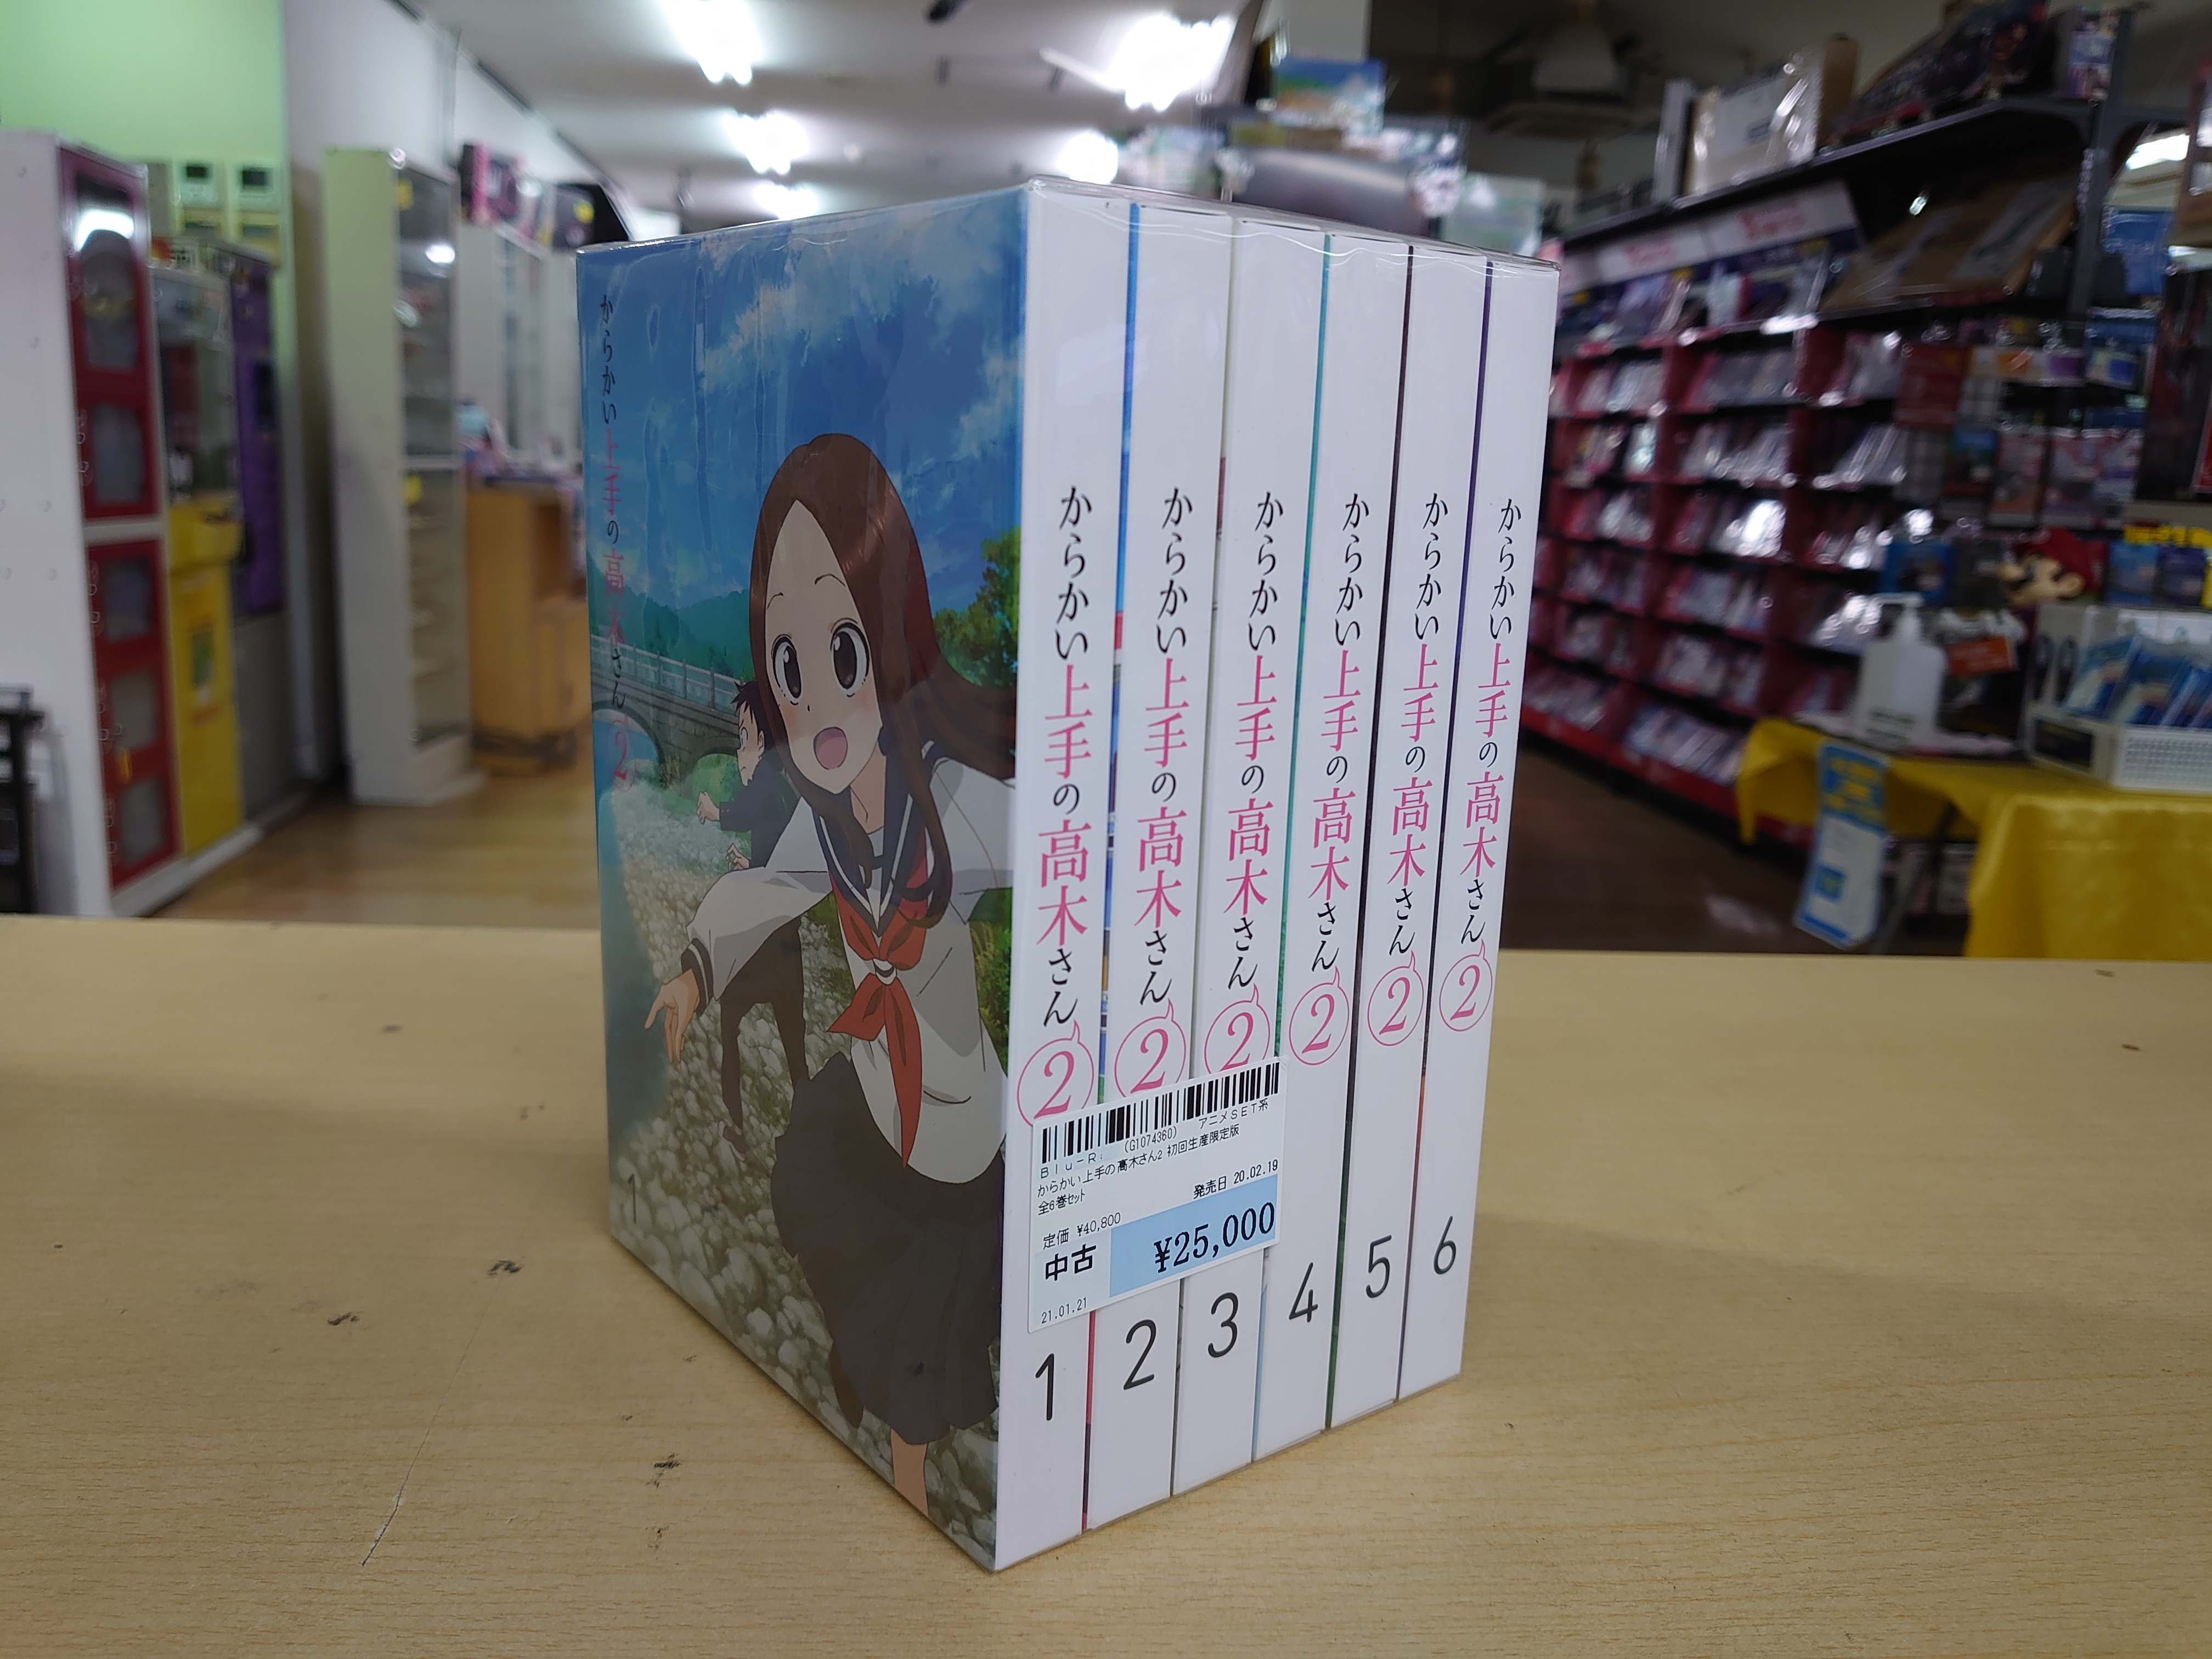 6720円 注目 からかい上手の高木さん3 Vol.2 初回生産限定版